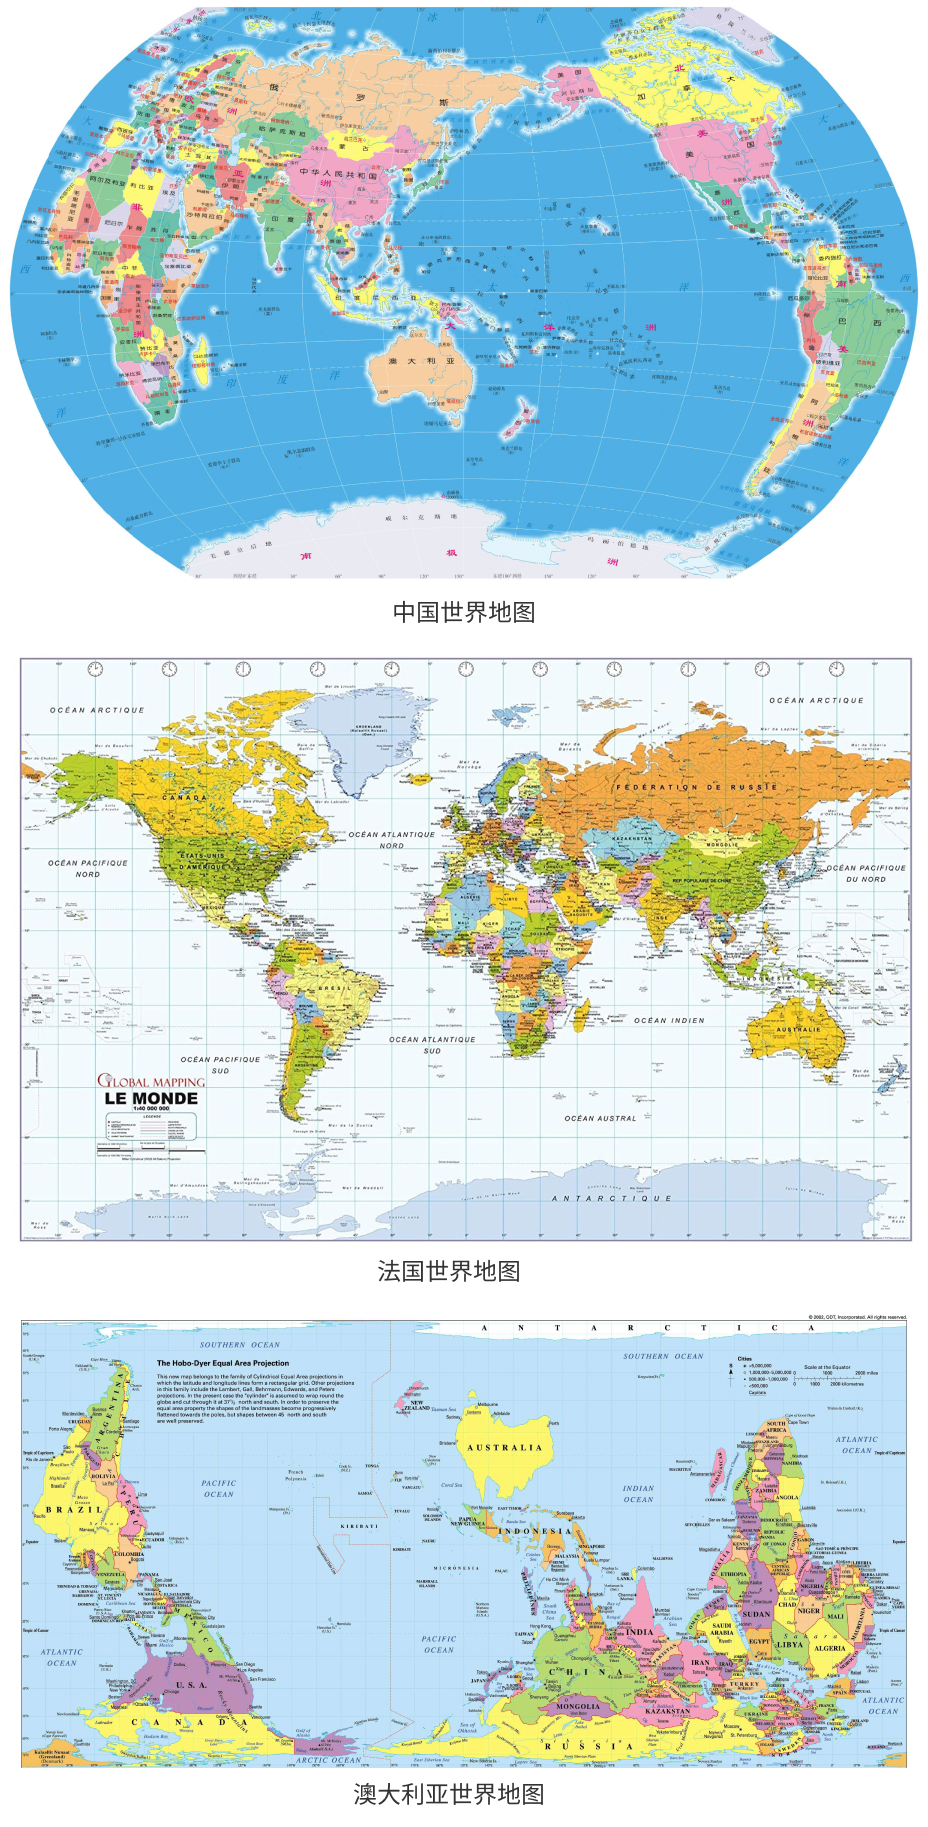 中国、法国、澳大利亚的世界地图